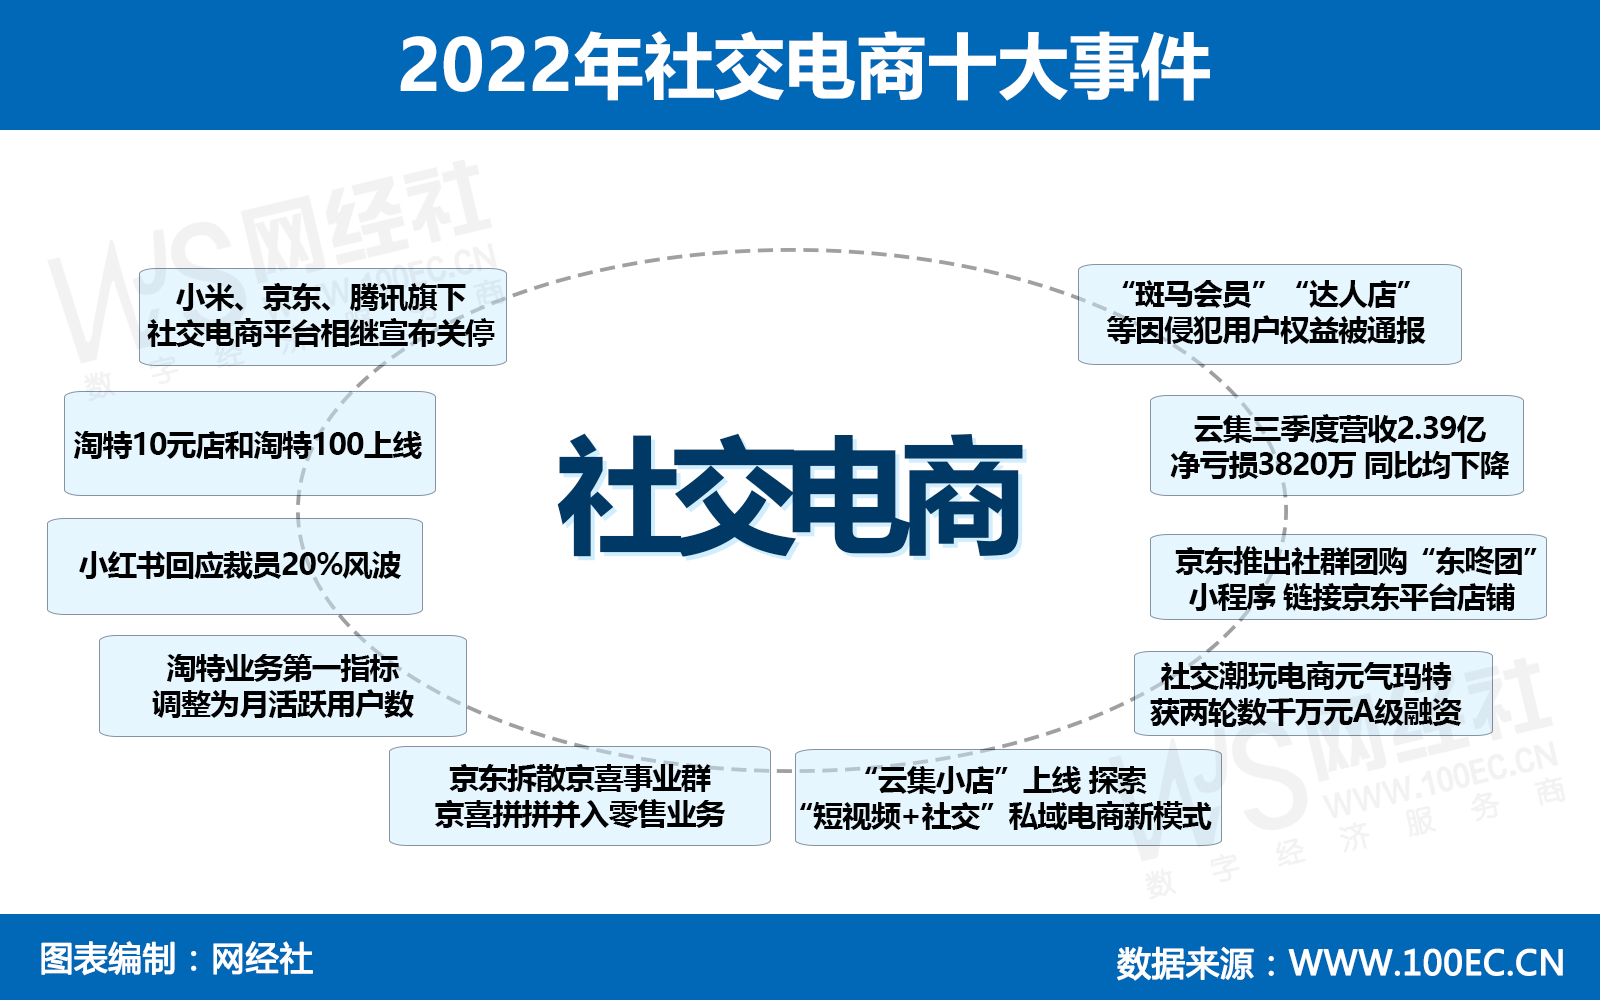 2022年社交电商十大事件(1).jpg